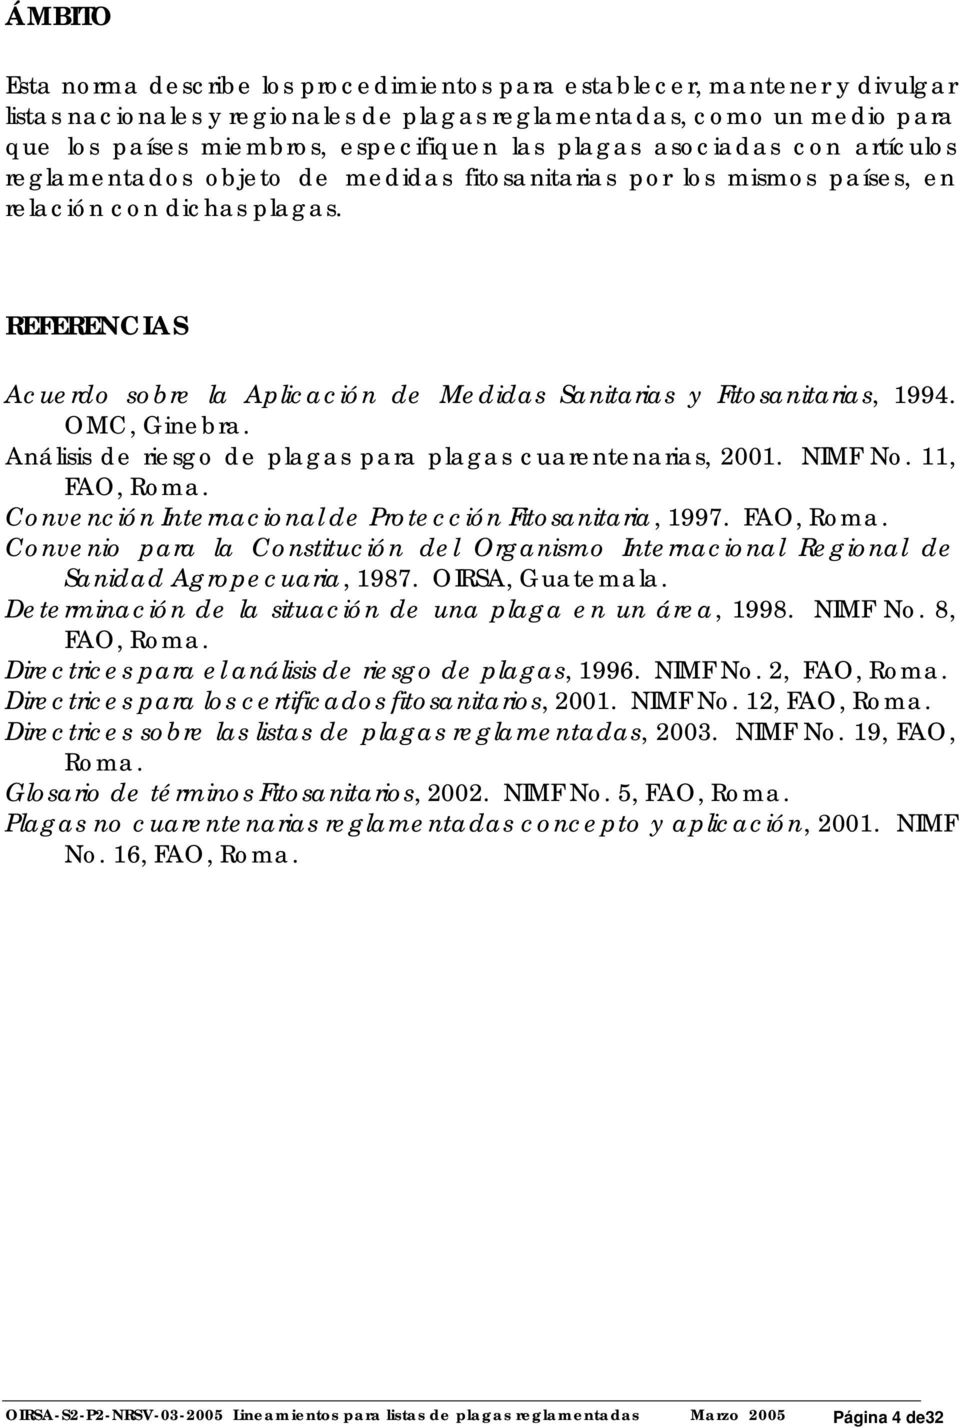 REFERENCIAS Acuerdo sobre la Aplicación de Medidas Sanitarias y Fitosanitarias, 1994. OMC, Ginebra. Análisis de riesgo de plagas para plagas cuarentenarias, 2001. NIMF No. 11, FAO, Roma.